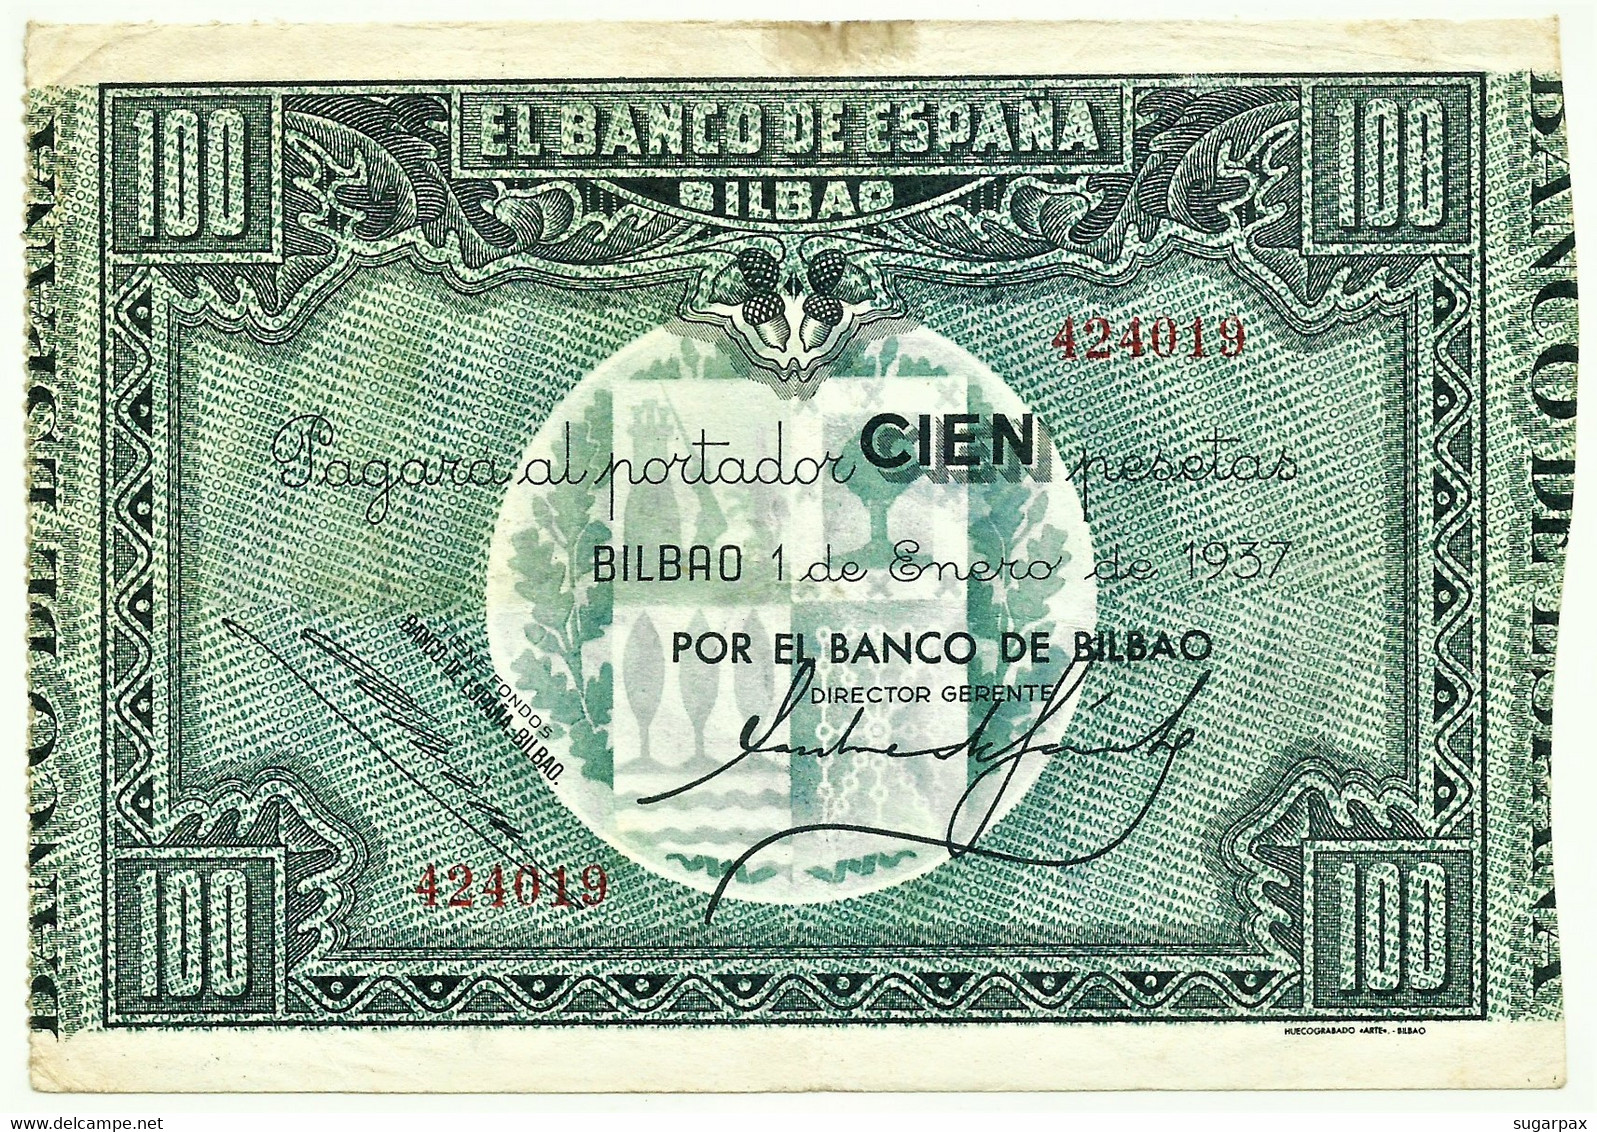 ESPAÑA - 100 Pesetas - 01.01.1937 - Pick S 565.a - Banco De Bilbao - GUERRA CIVIL WAR - 100 Pesetas